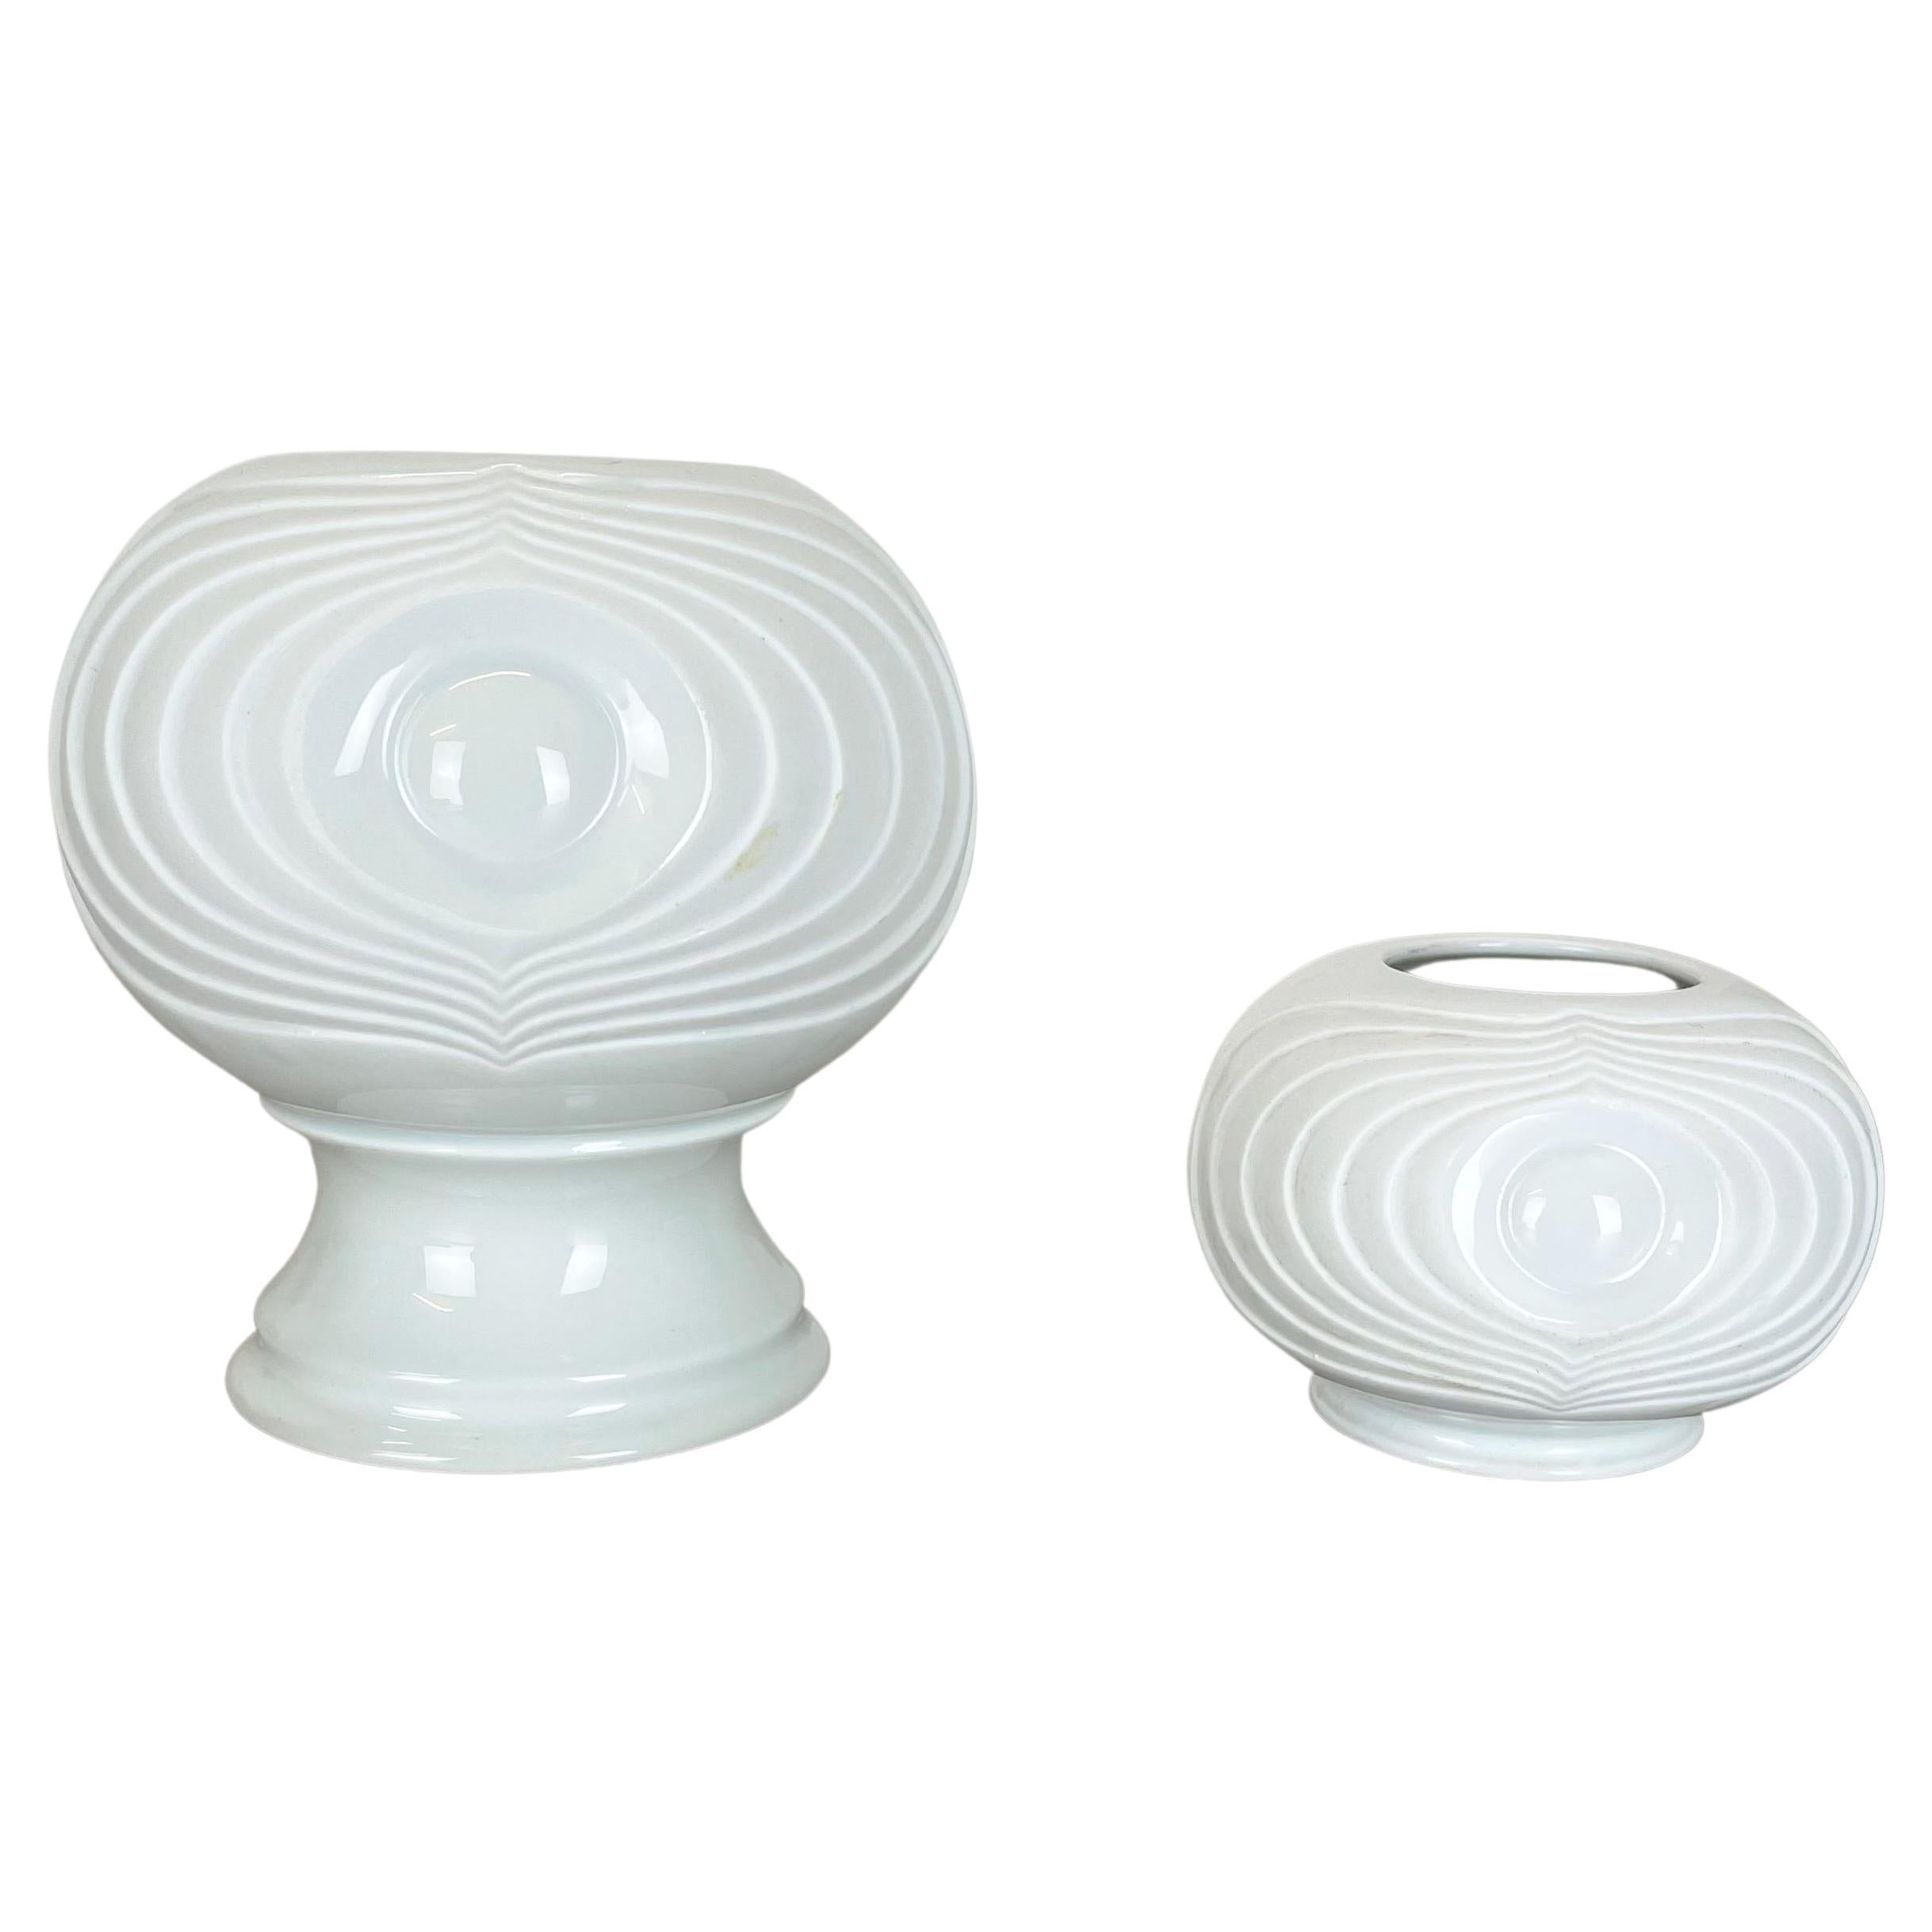 Set of 2 Original Porcelain OP Art Vase Made by Royal Bavaria KPM Germany, 1970s